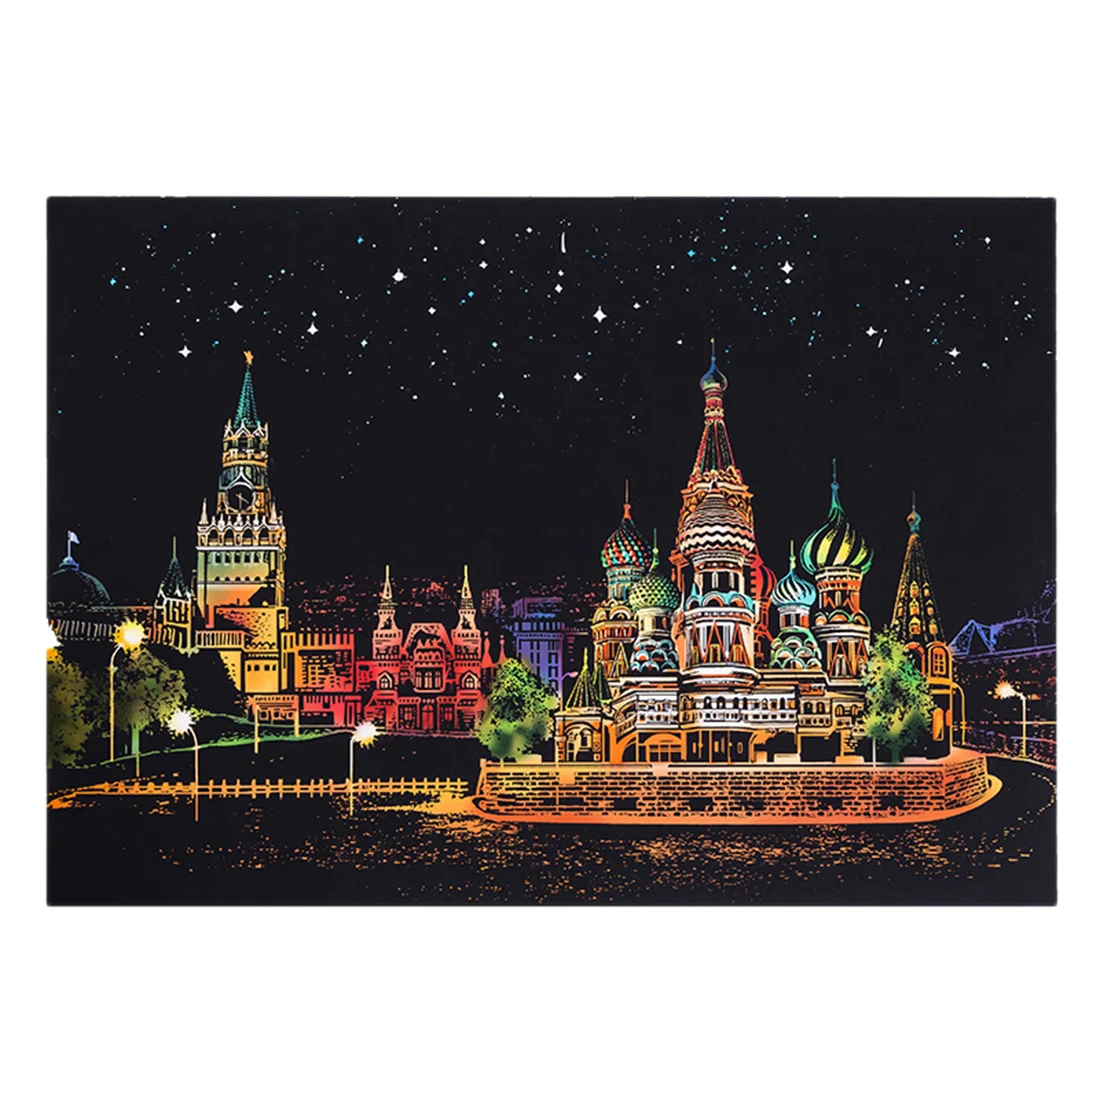 Дети 40,5*28,5 см России красный квадрат Romatic ночная сцена DIY нарисованная картина скребковая живопись бумага + рисовать палку рамка кисти